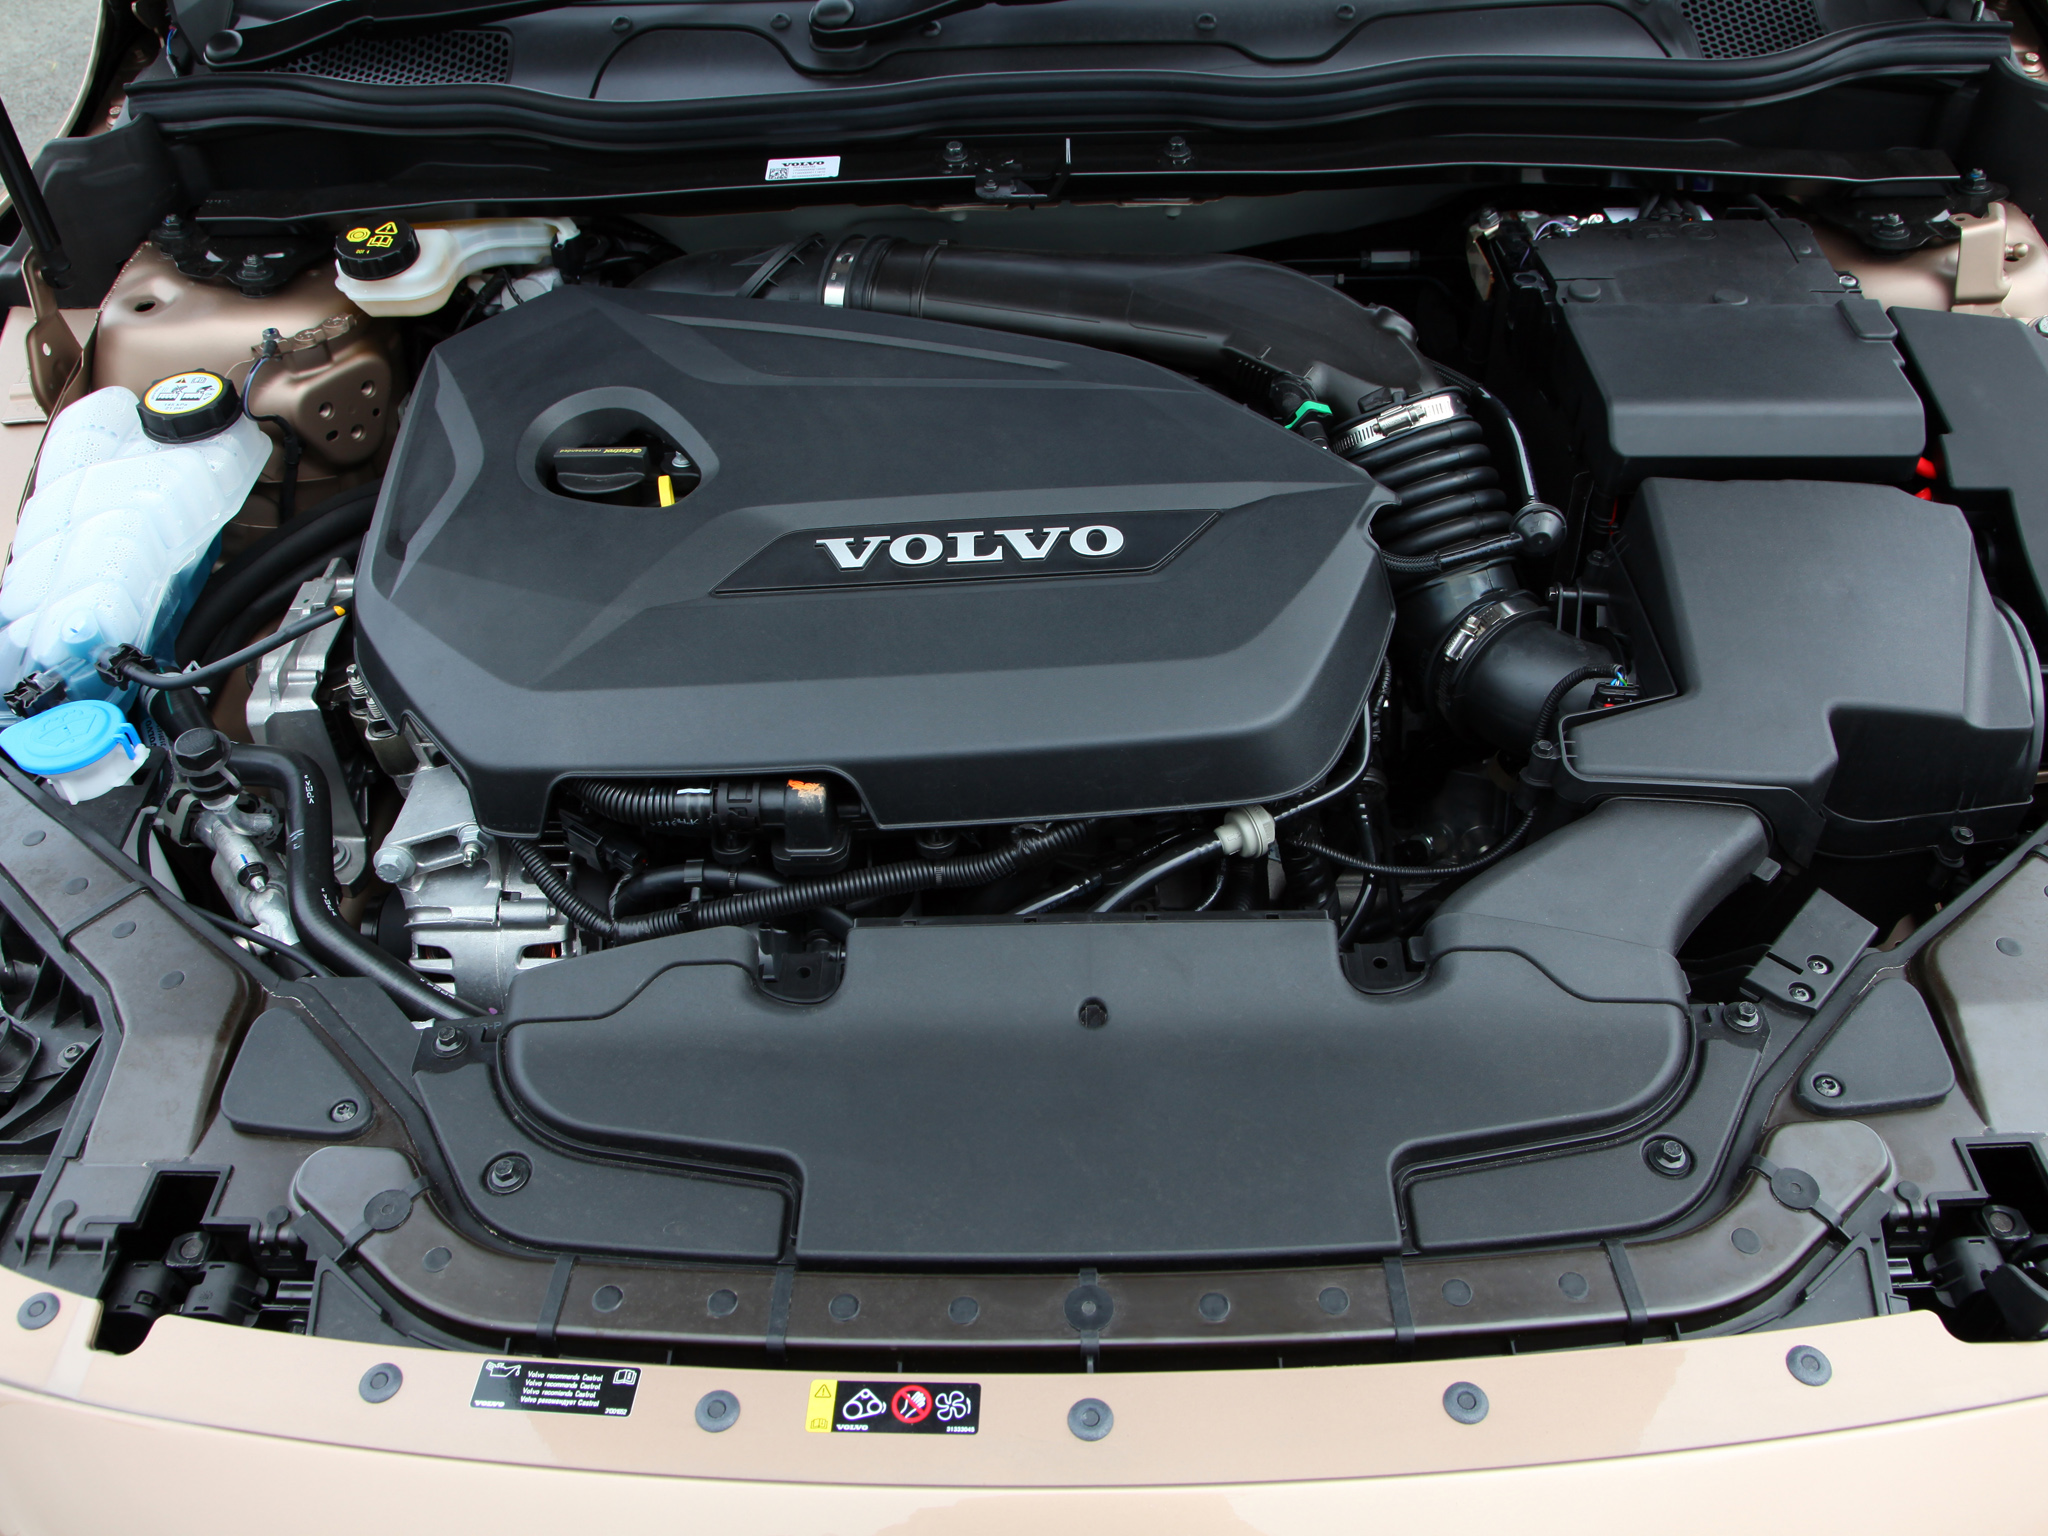 Volvo s60 1.6. Двигатель b4164t Volvo s60. Двигатель Вольво s60 1.6t. Volvo v40 двигатель.